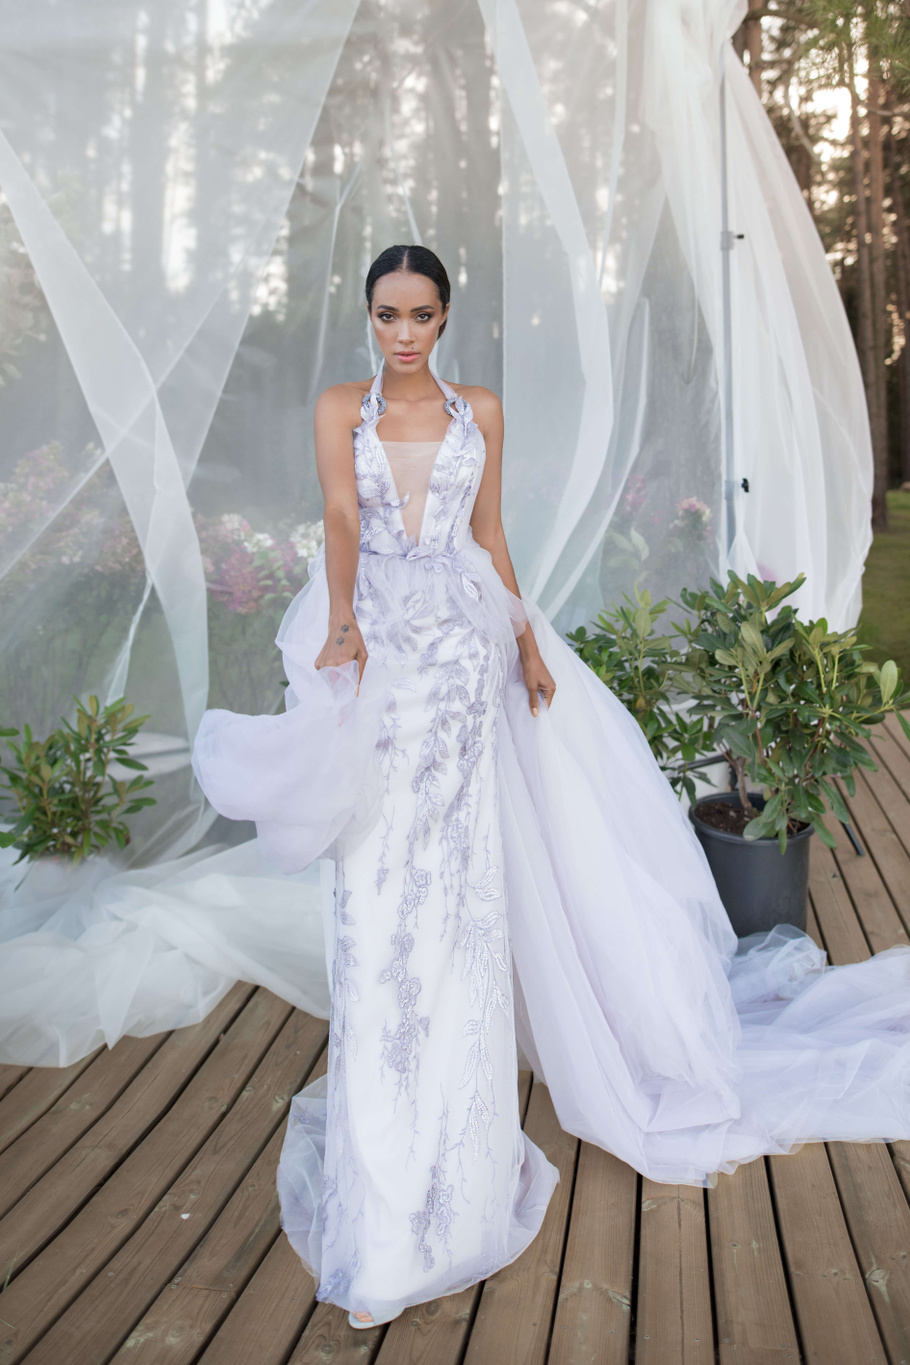 Купить свадебное платье «Луи» Бламмо Биамо из коллекции Нимфа 2020 года в Нижнем Новгороде